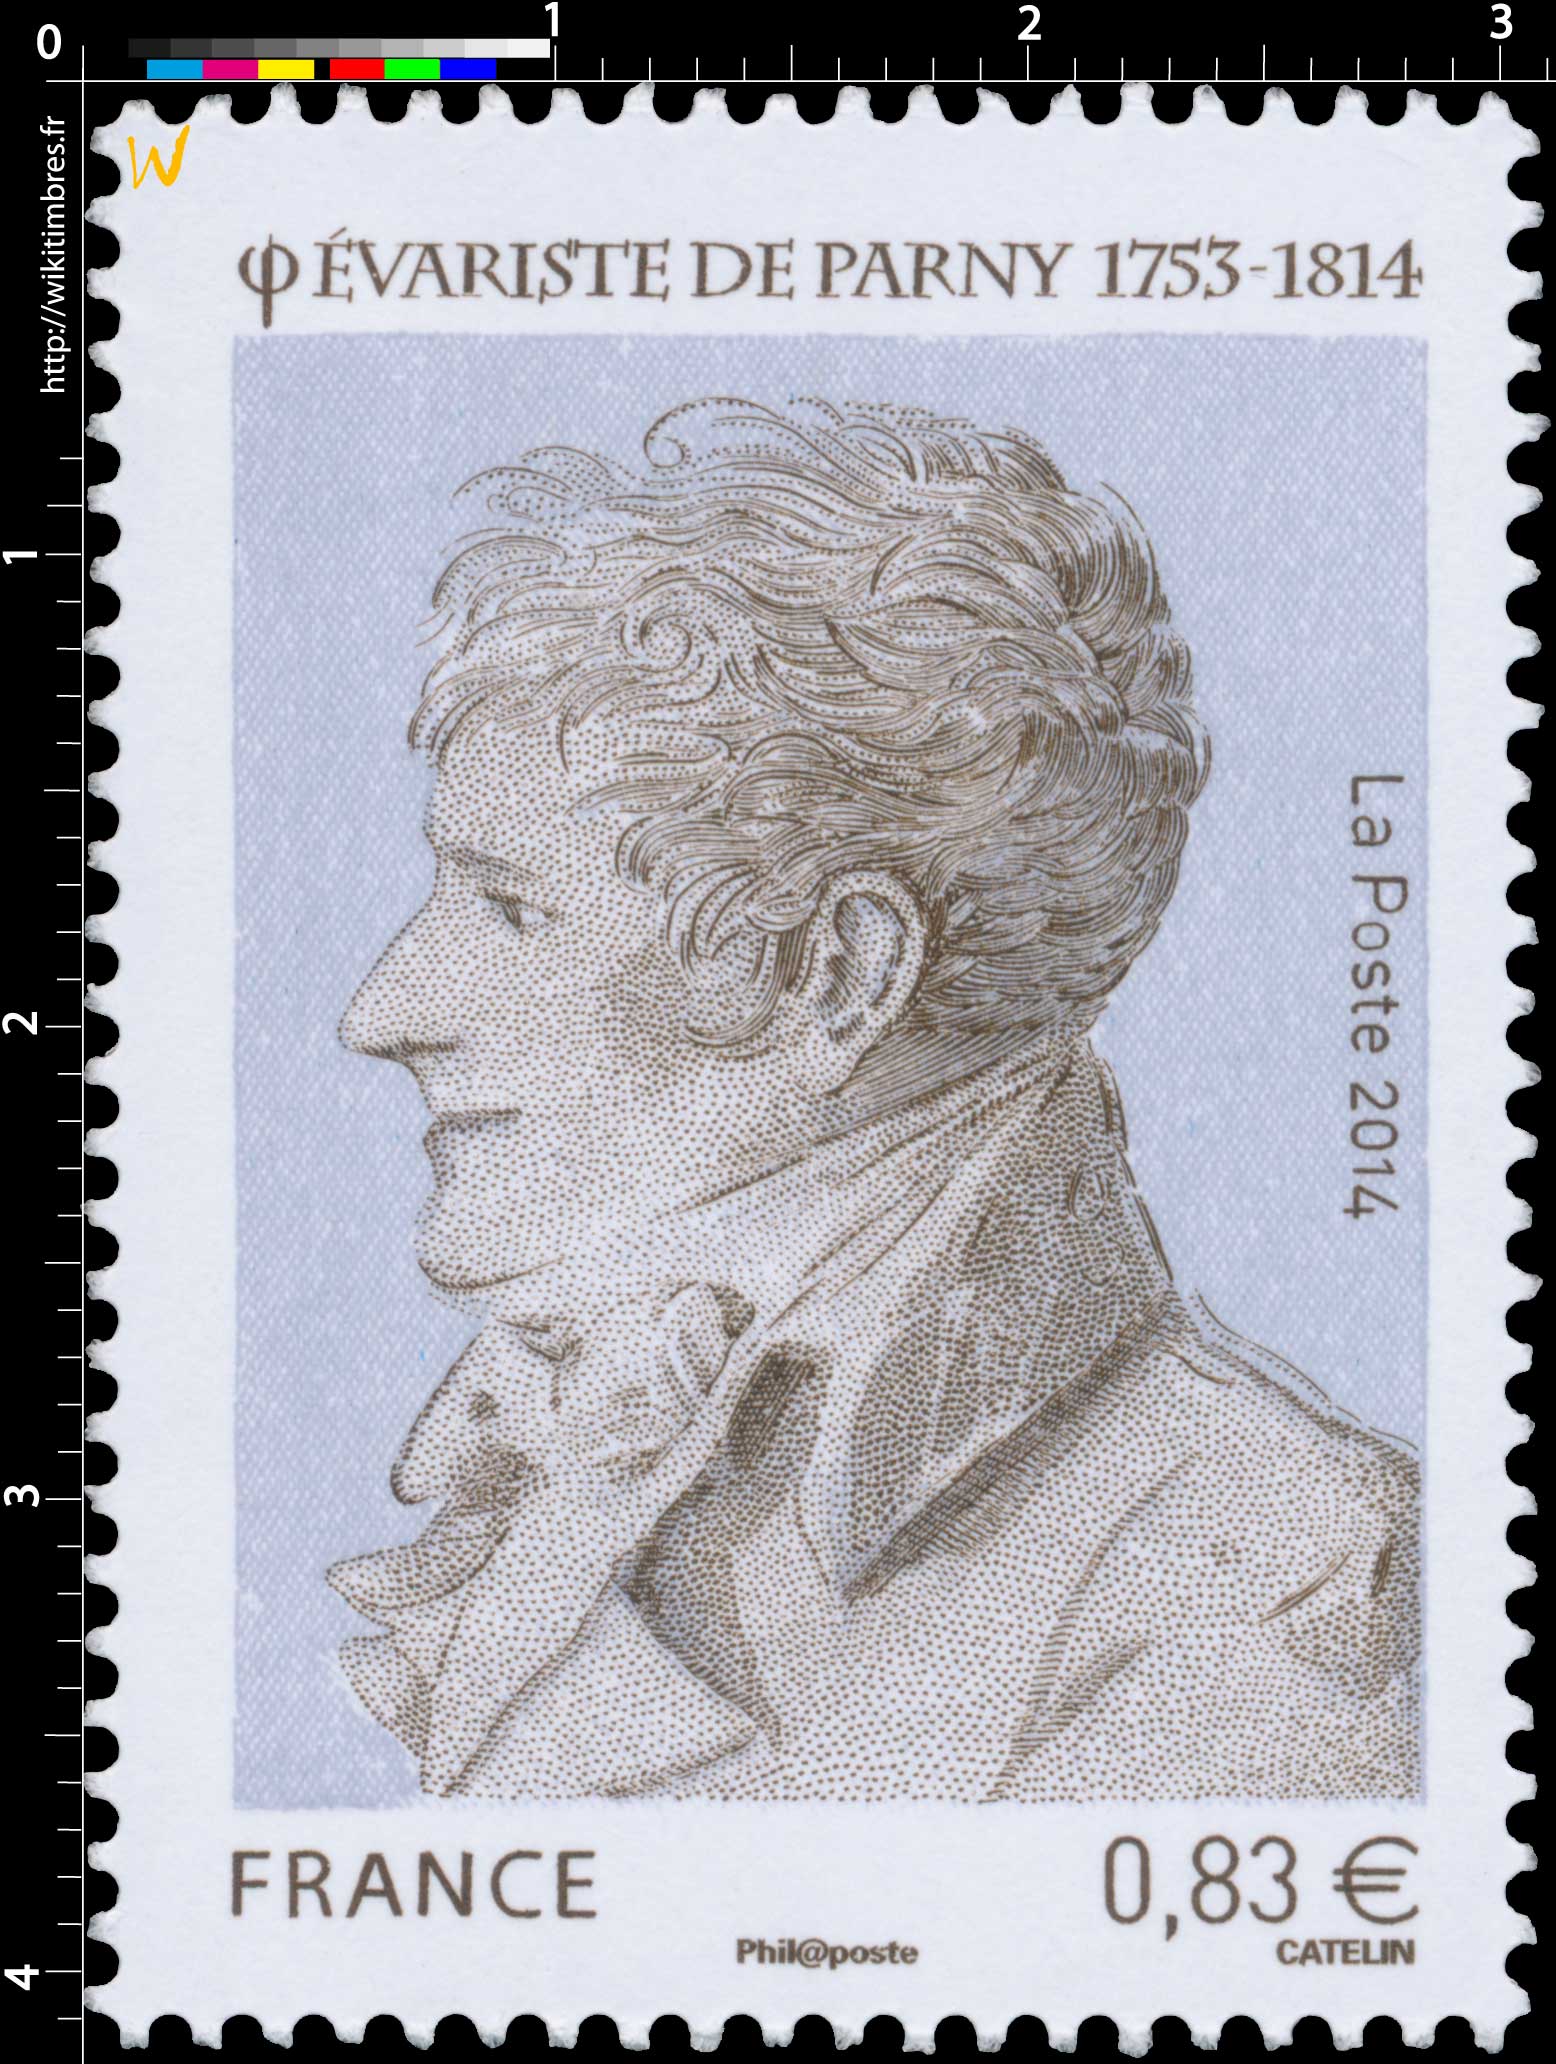 2014 Évariste de Parny 1753-1814